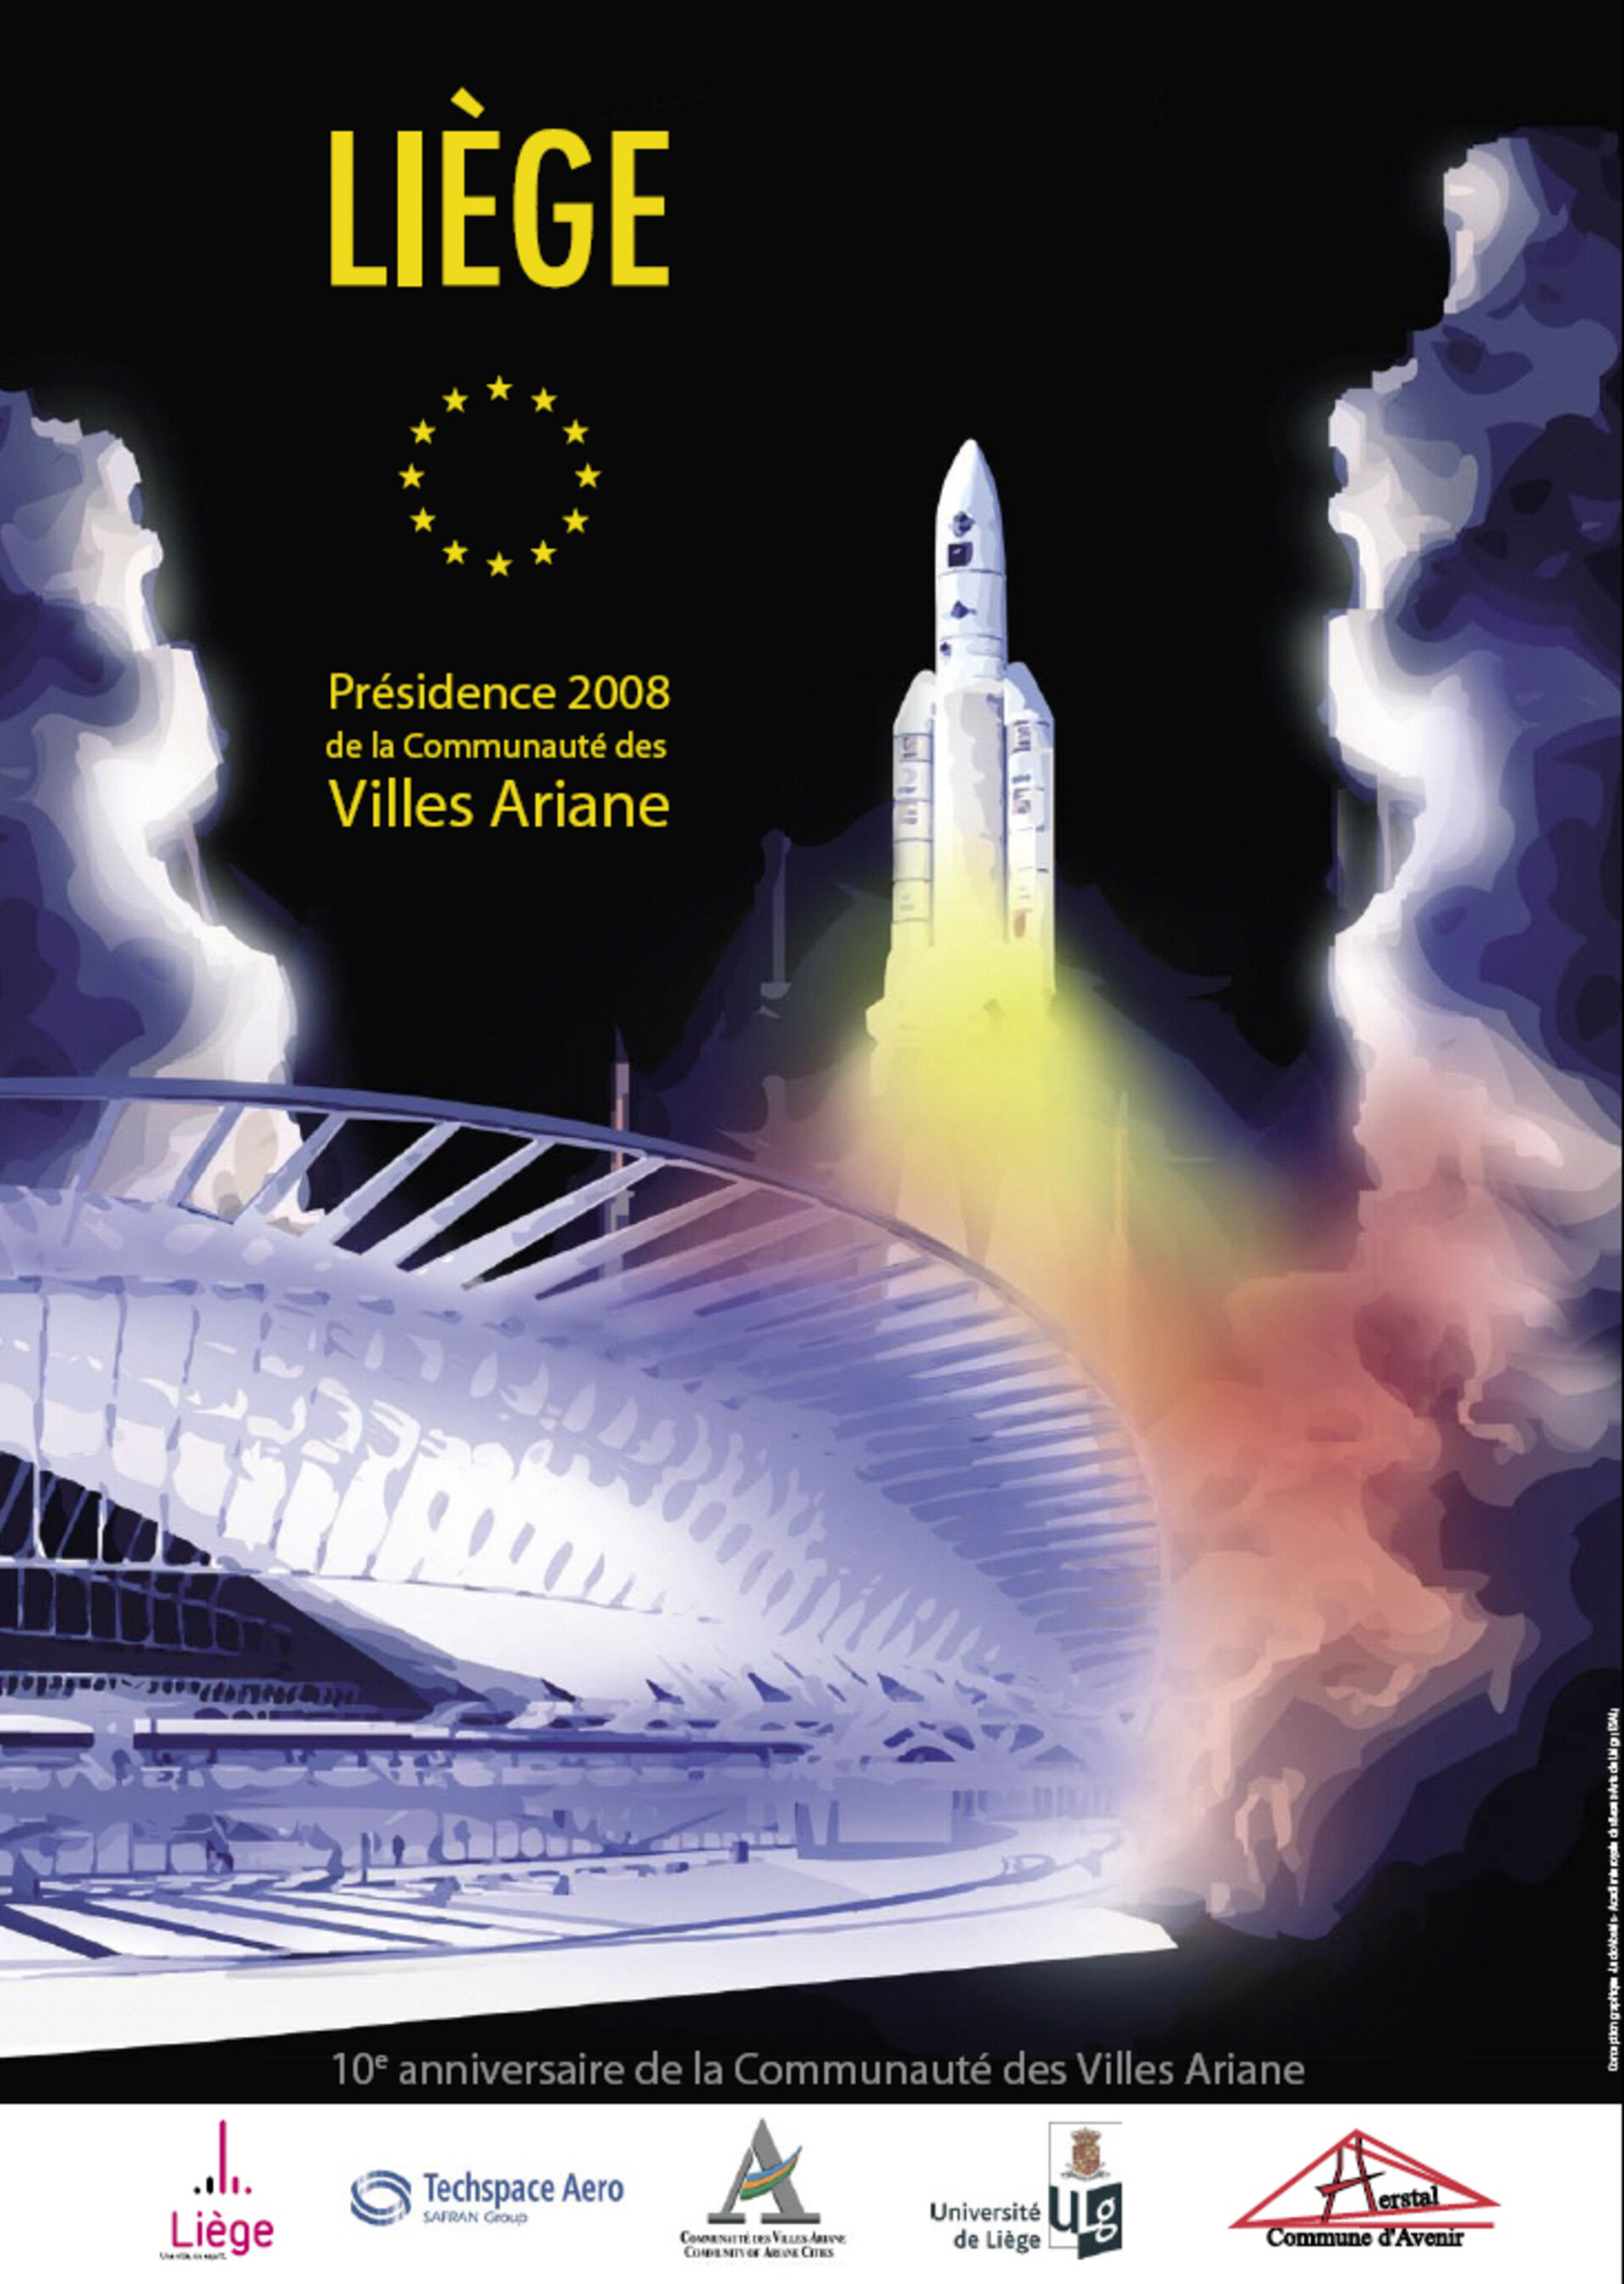 Oeuvre primée du jeune artiste liégeois cette affiche CVA Liège associe la gare de Liège et la fusée européenne Ariane.